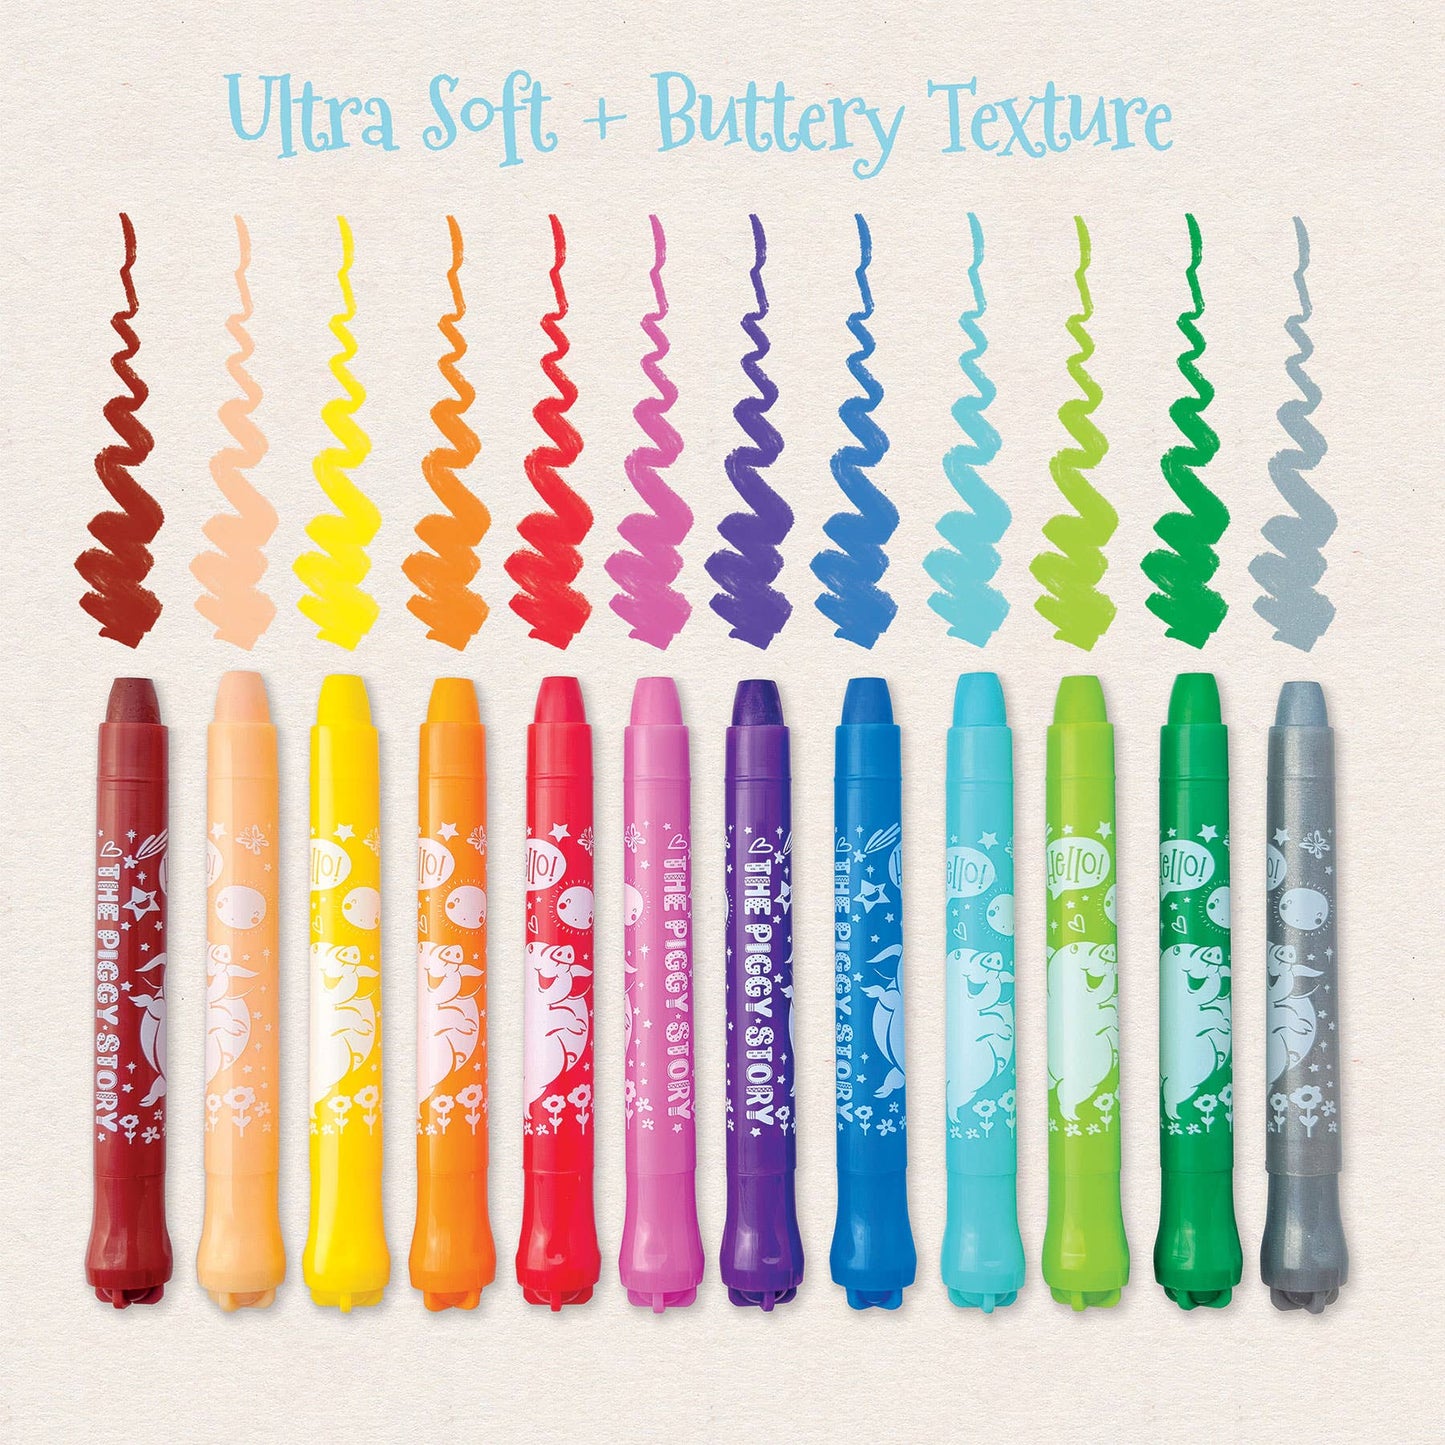 Dry Erase Twistable Gel Crayons- Unicorn Fantasy